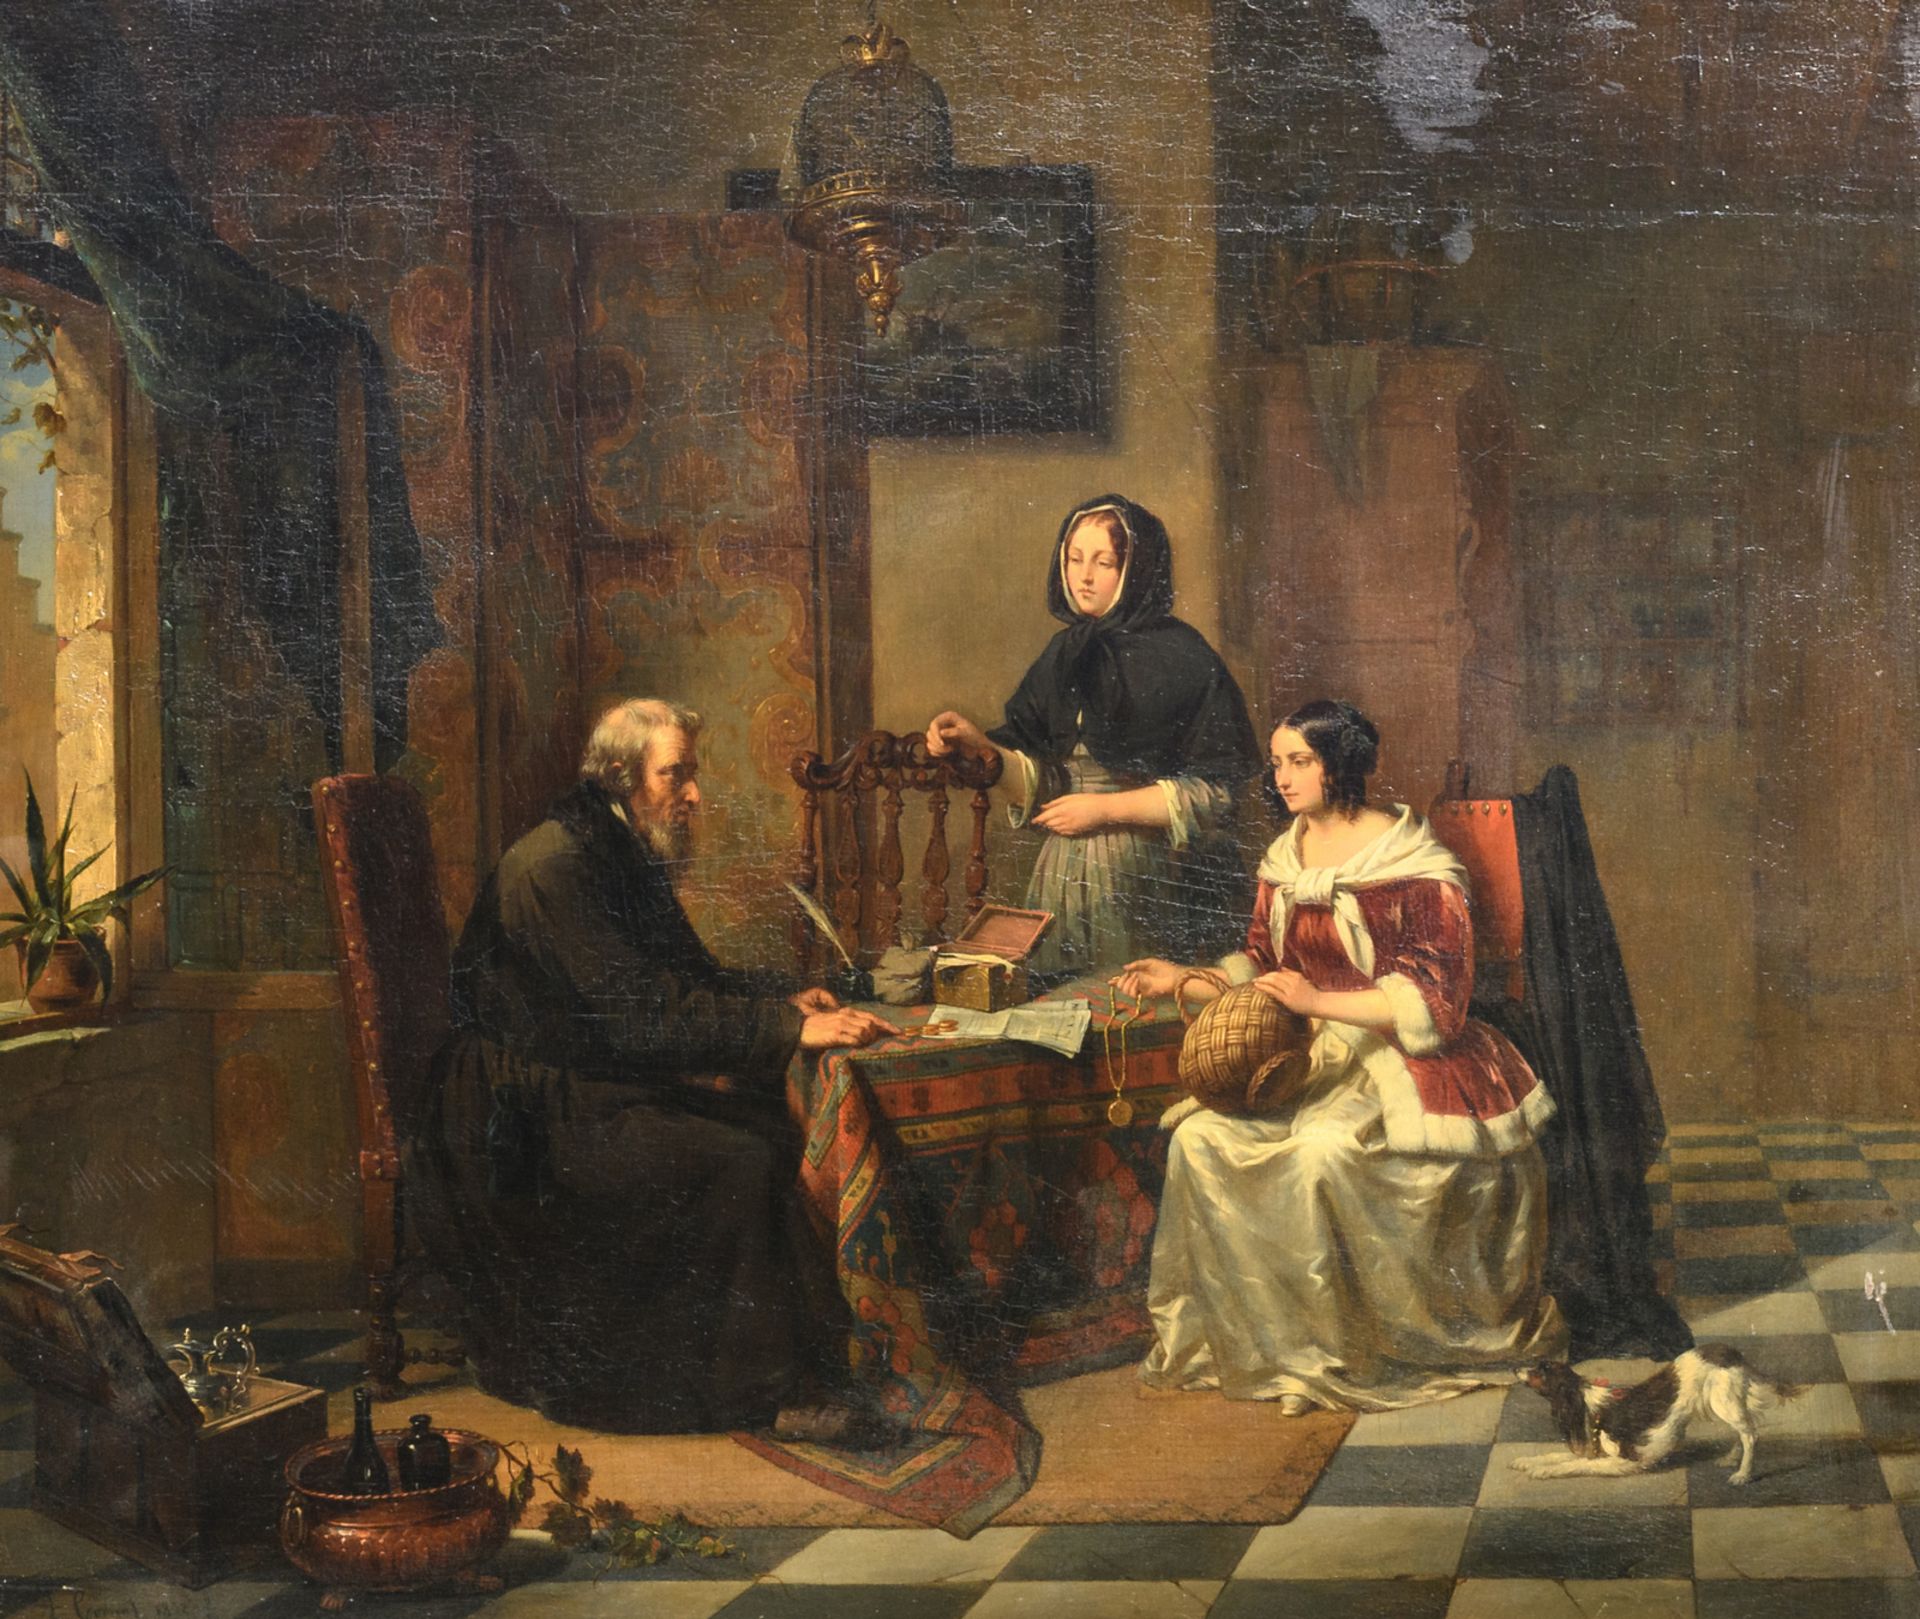 Cornet A., 'Chez l'usurier', oil on panel, dated 1852, 55,5 x 63,5 cm